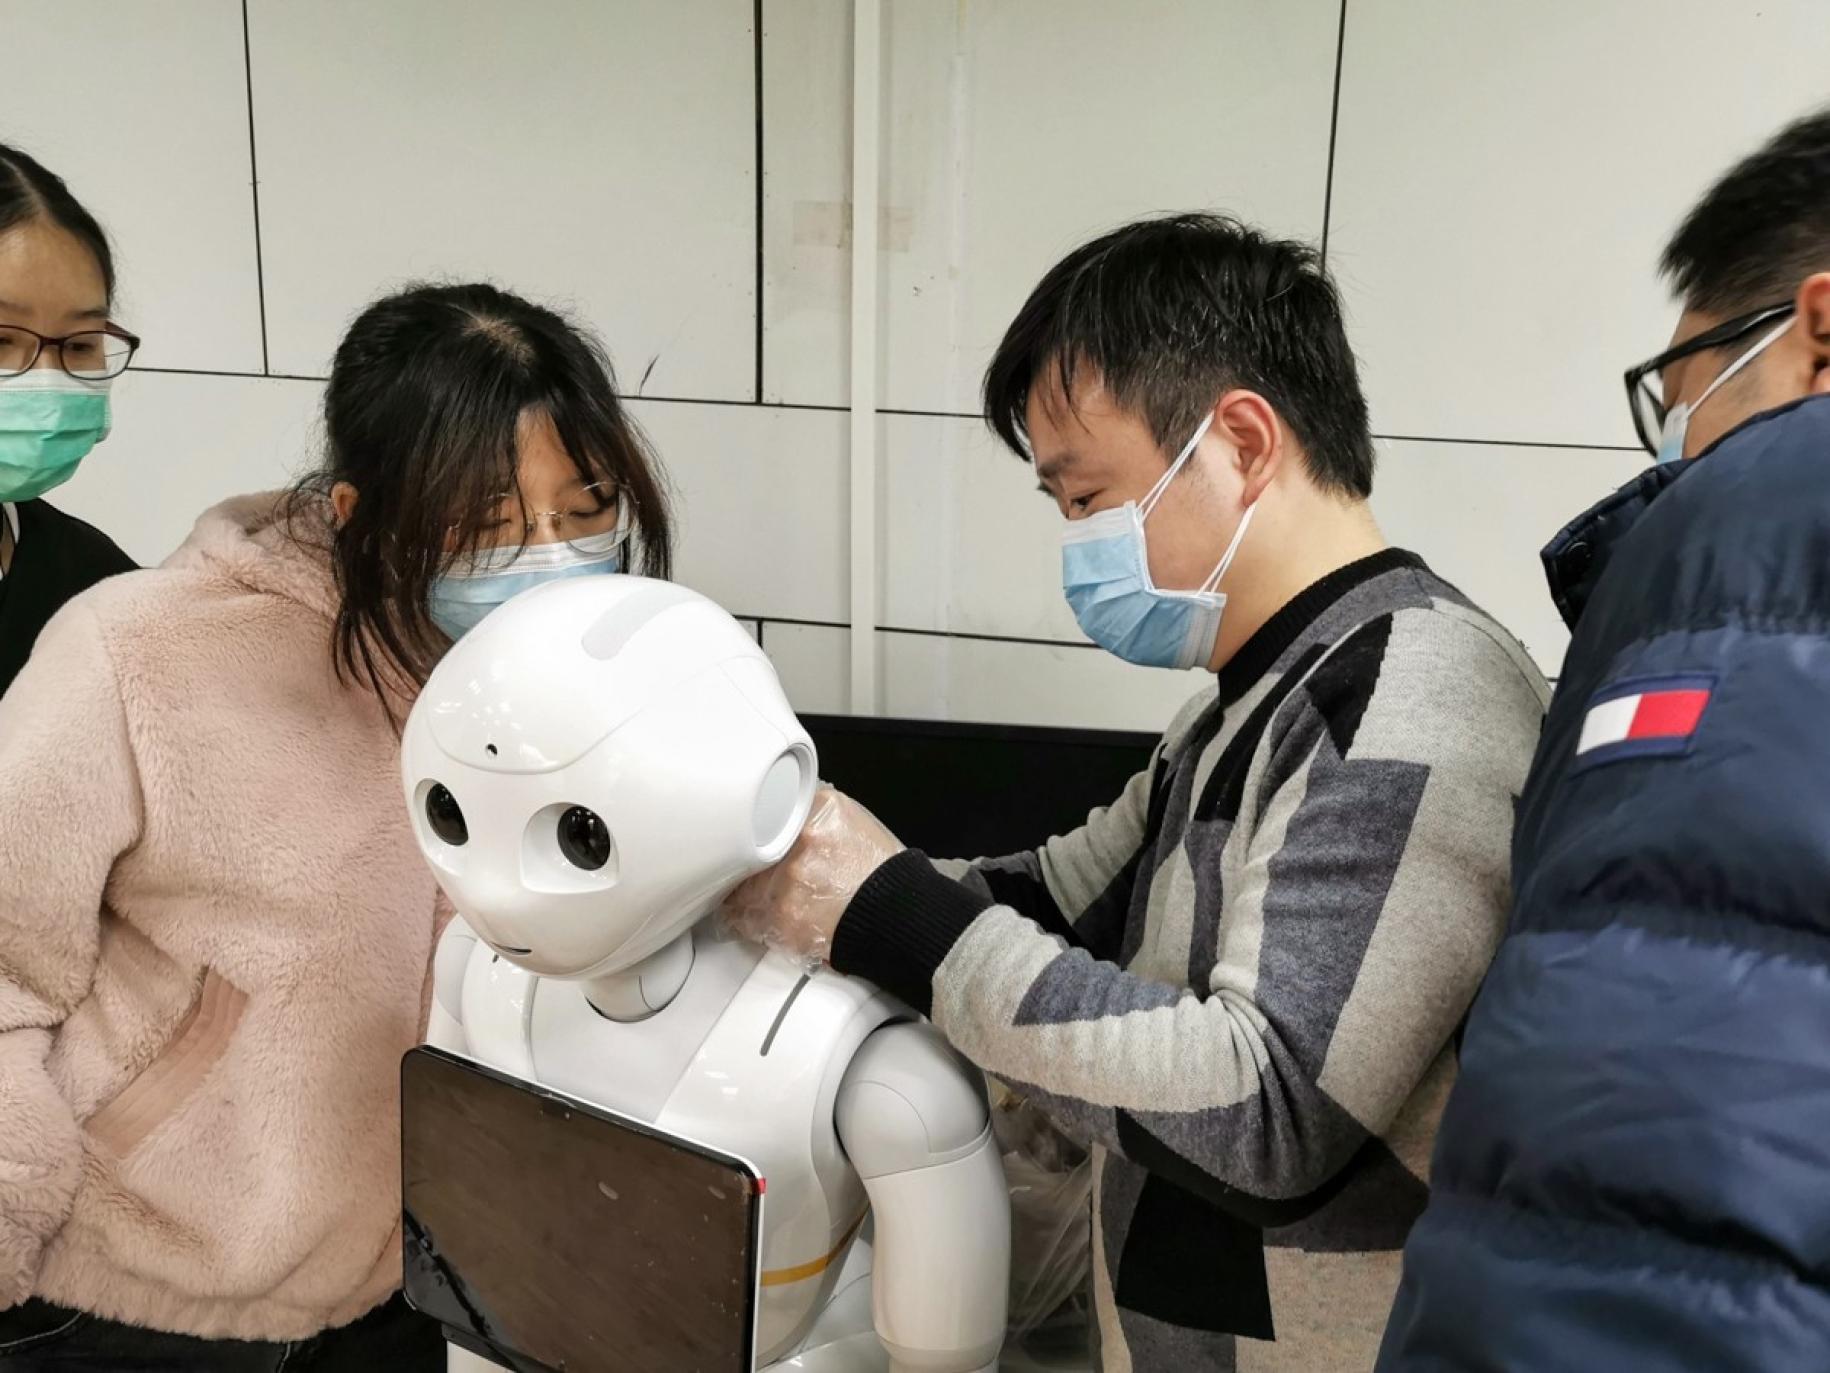 Des jeunes portant des masques de protection manipulent un robot.